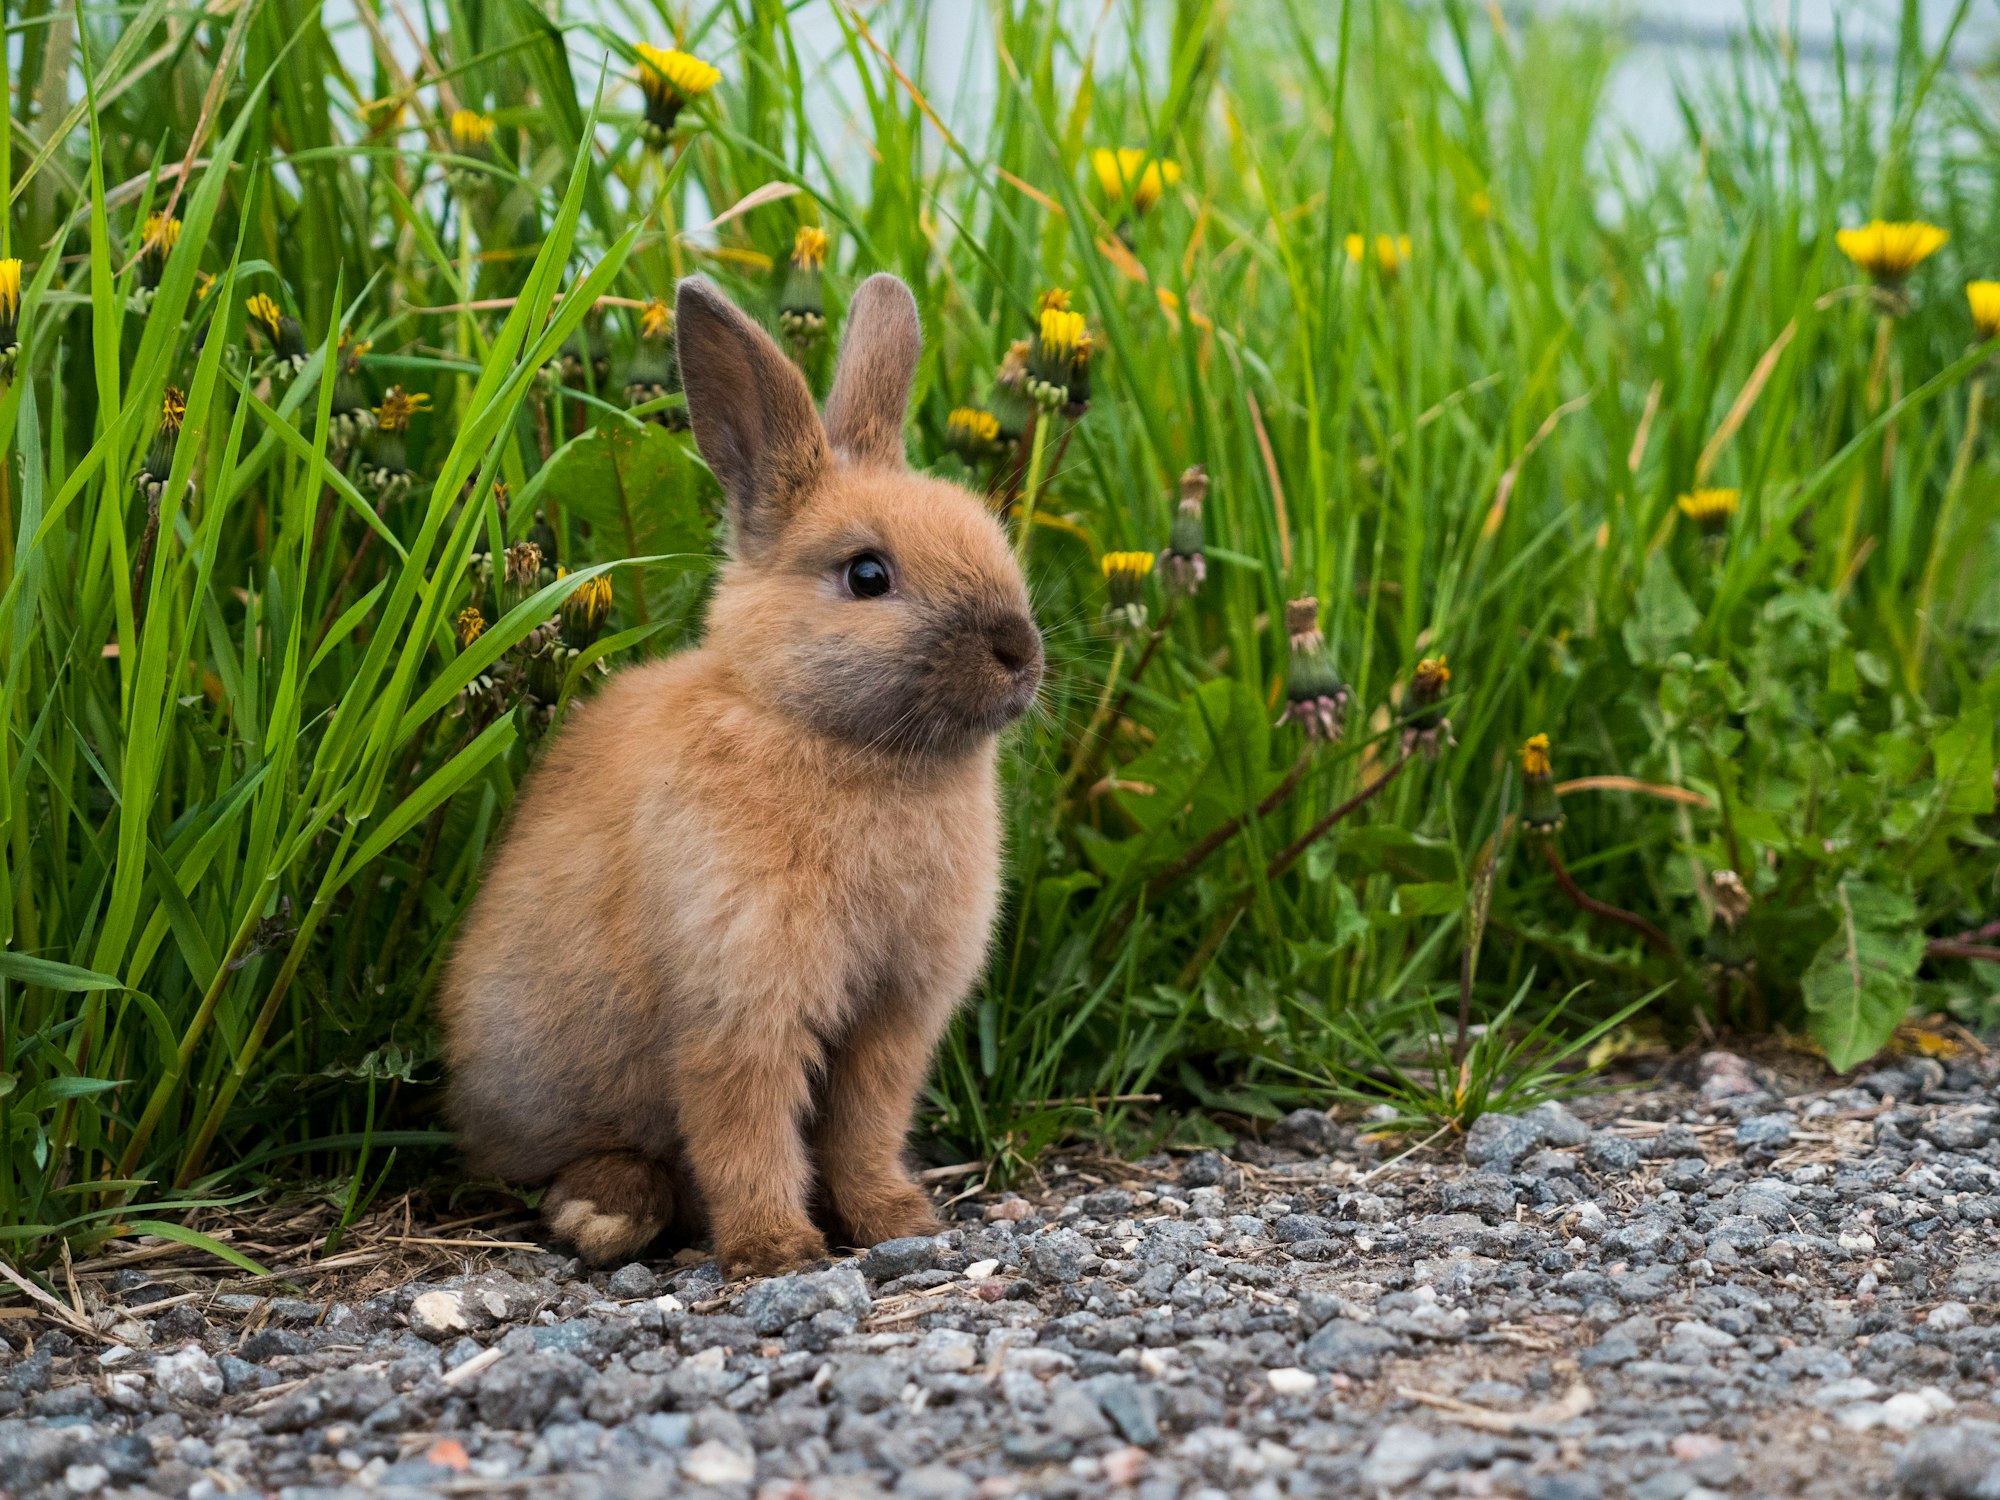 A little rabbit walking outside